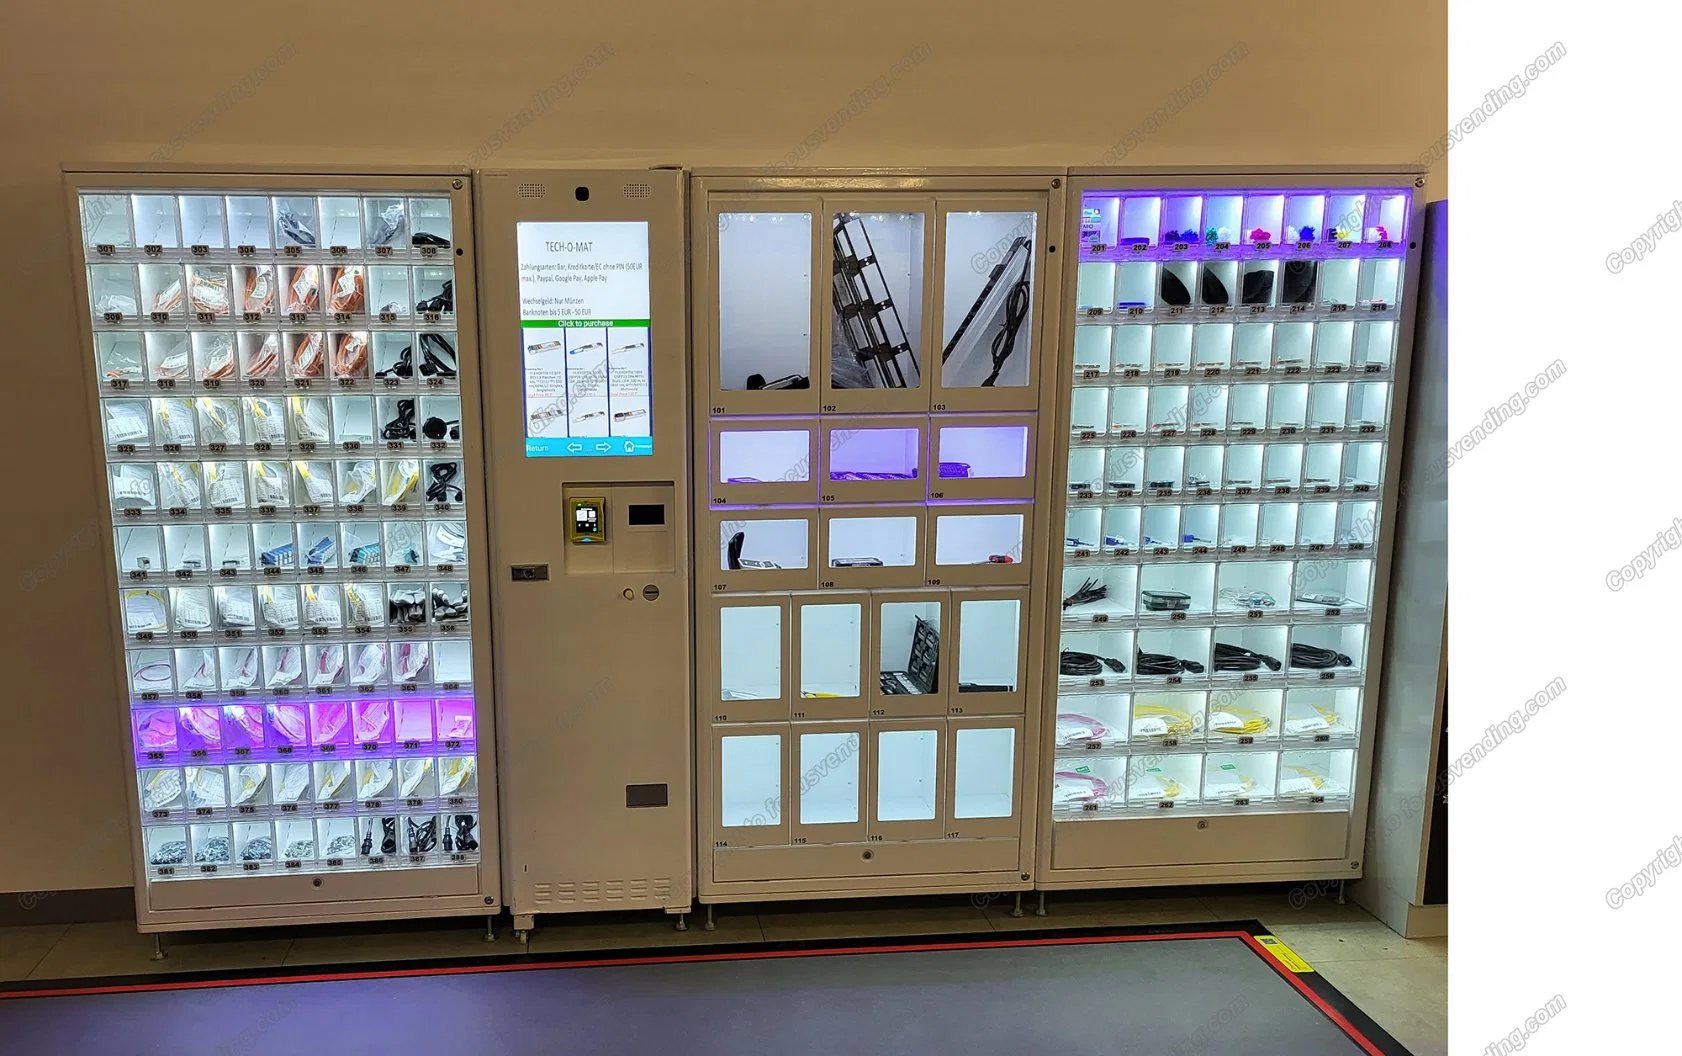 Focusvend aperitivos Autoservicio inteligente Locker máquina expendedora con muchas cajas